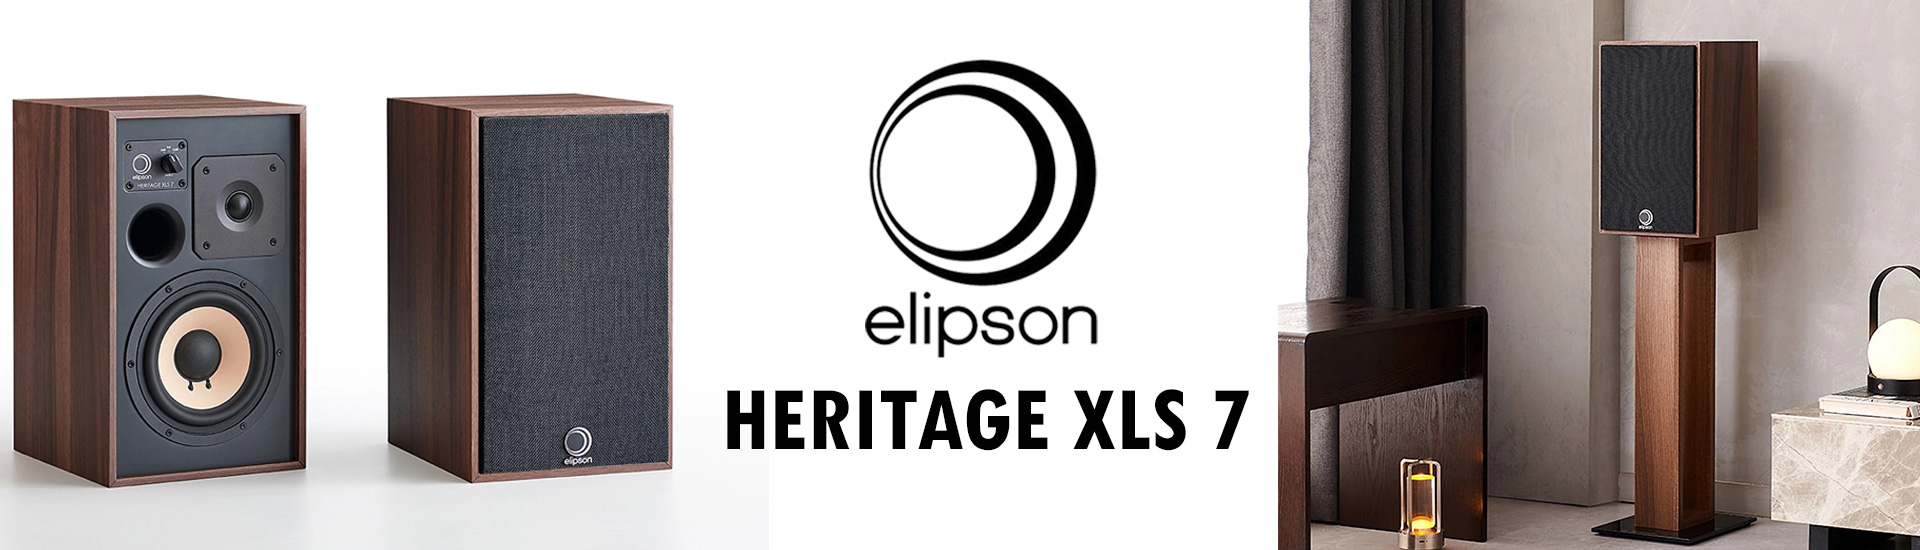 Elipson Heritage XLS 7